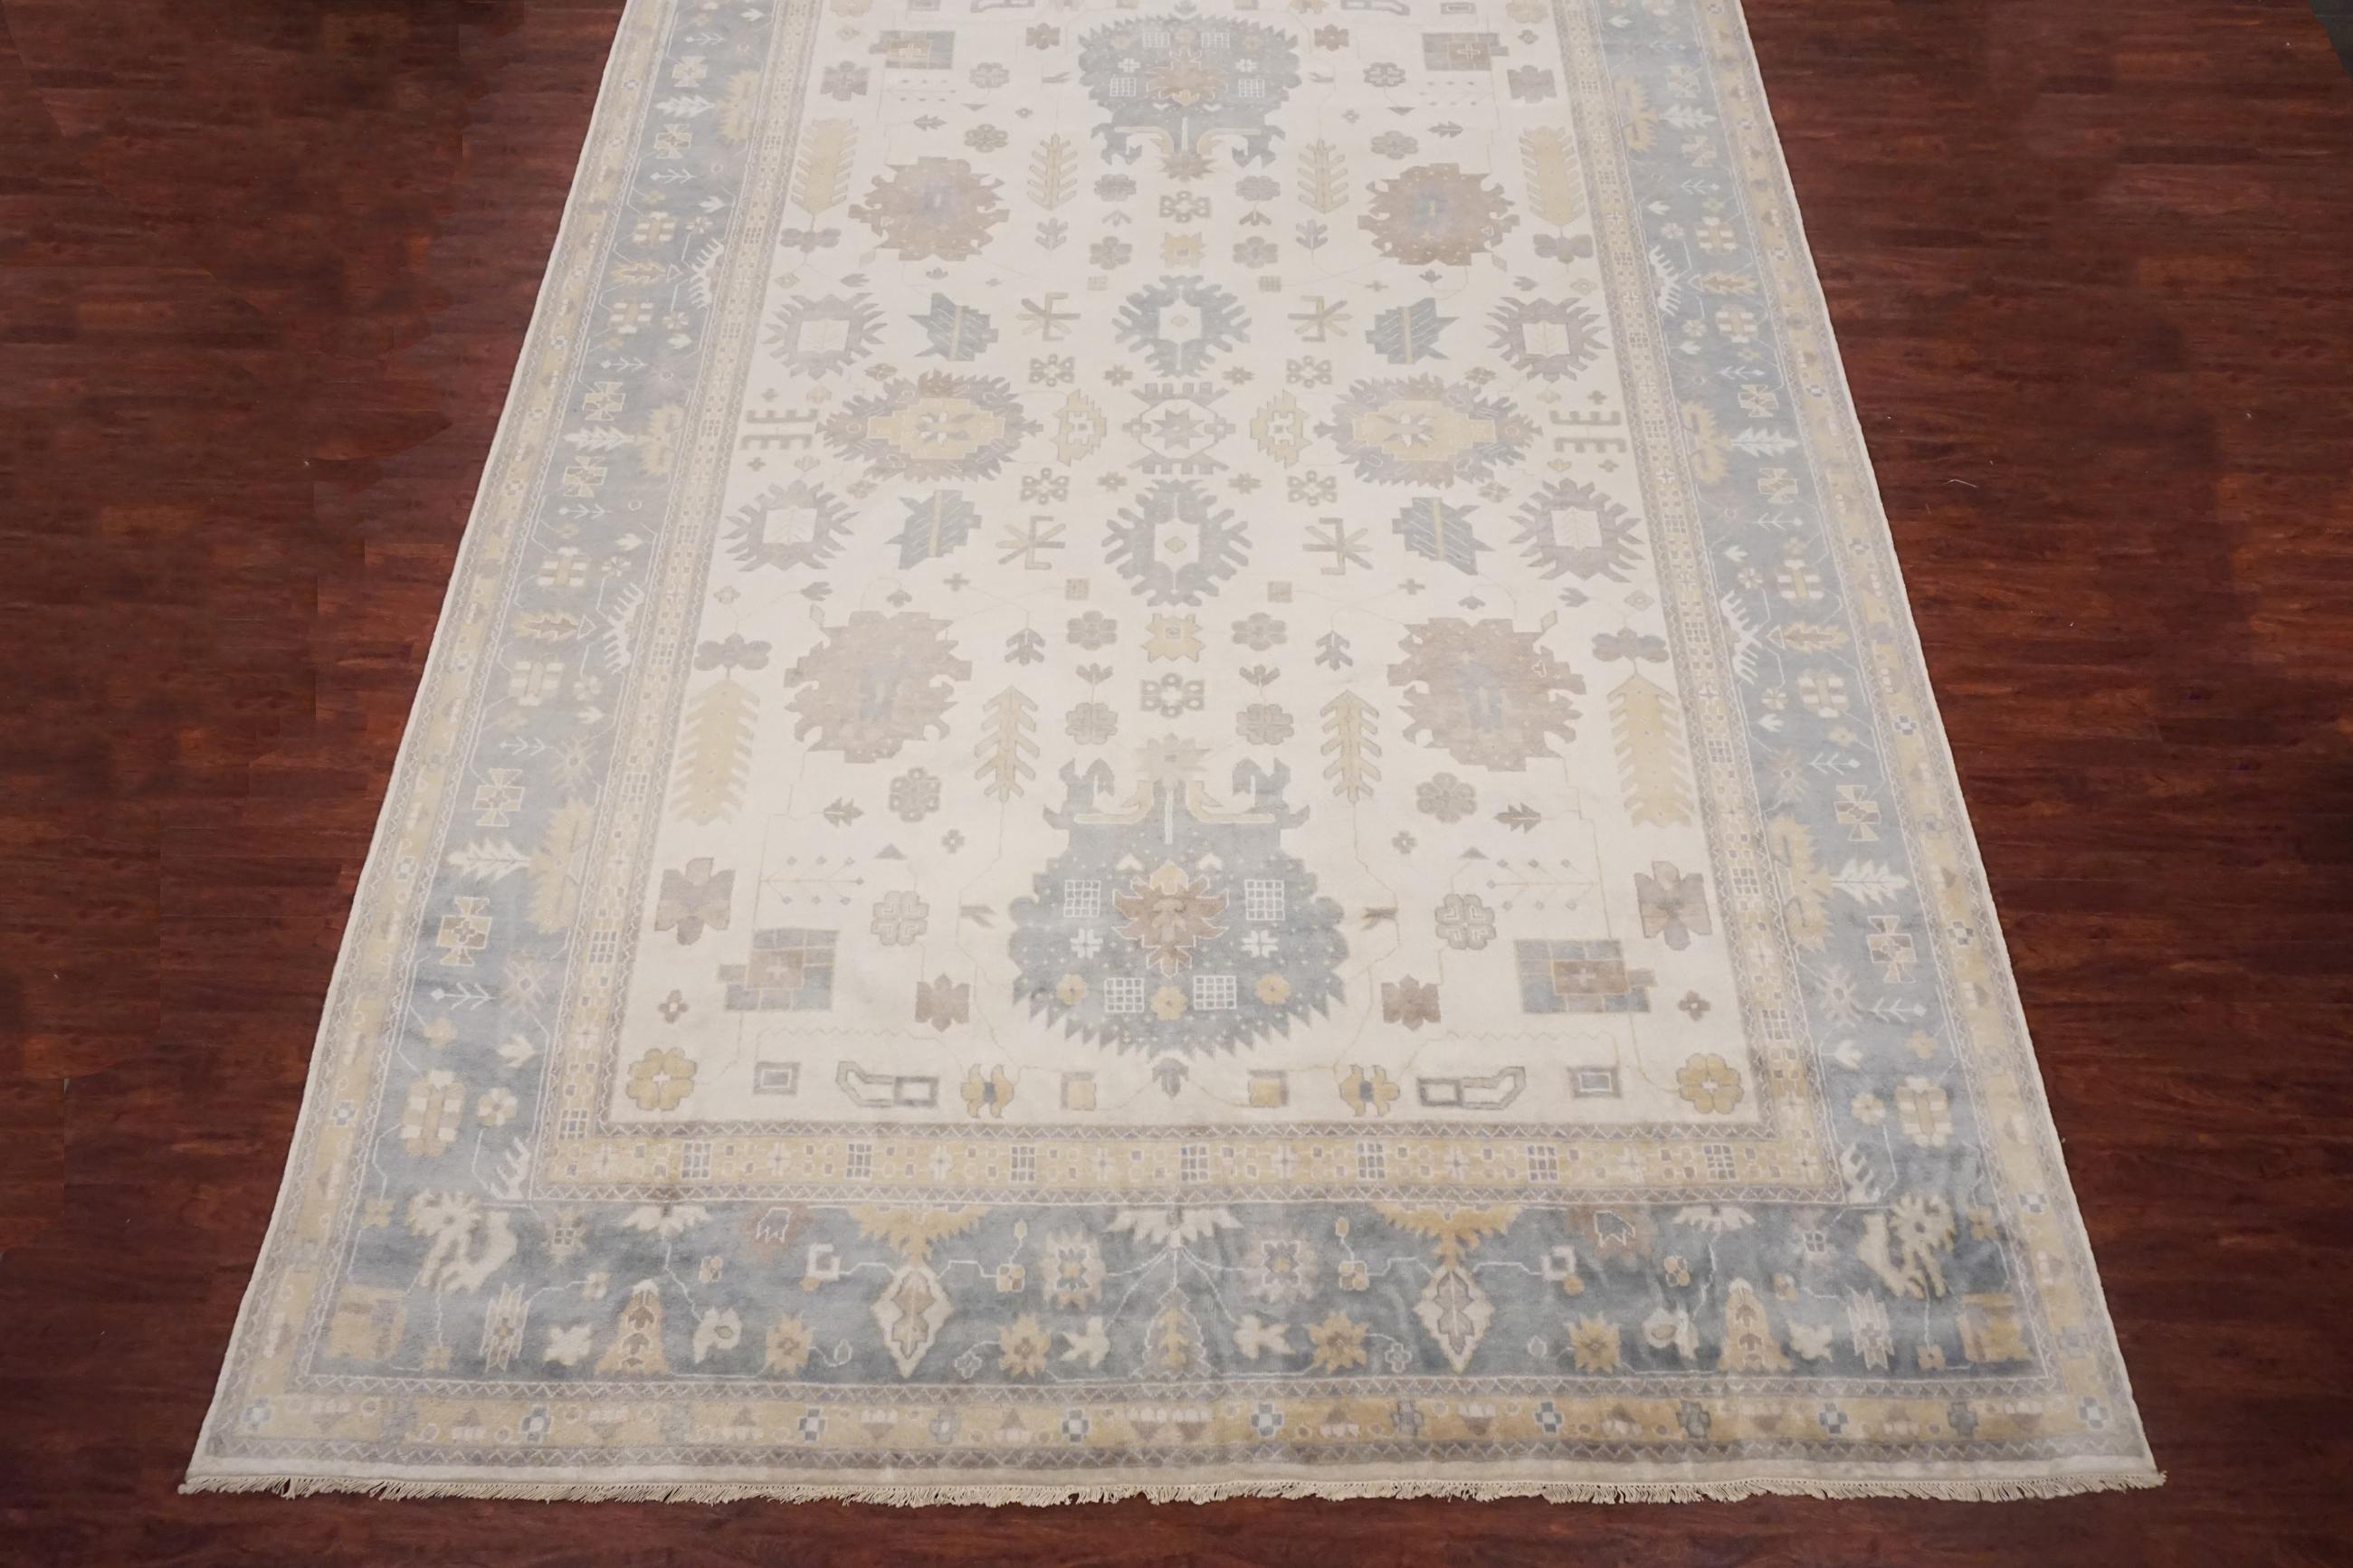 Oversized vegetable dyed oushak rug

2015

Measures: 11' 10